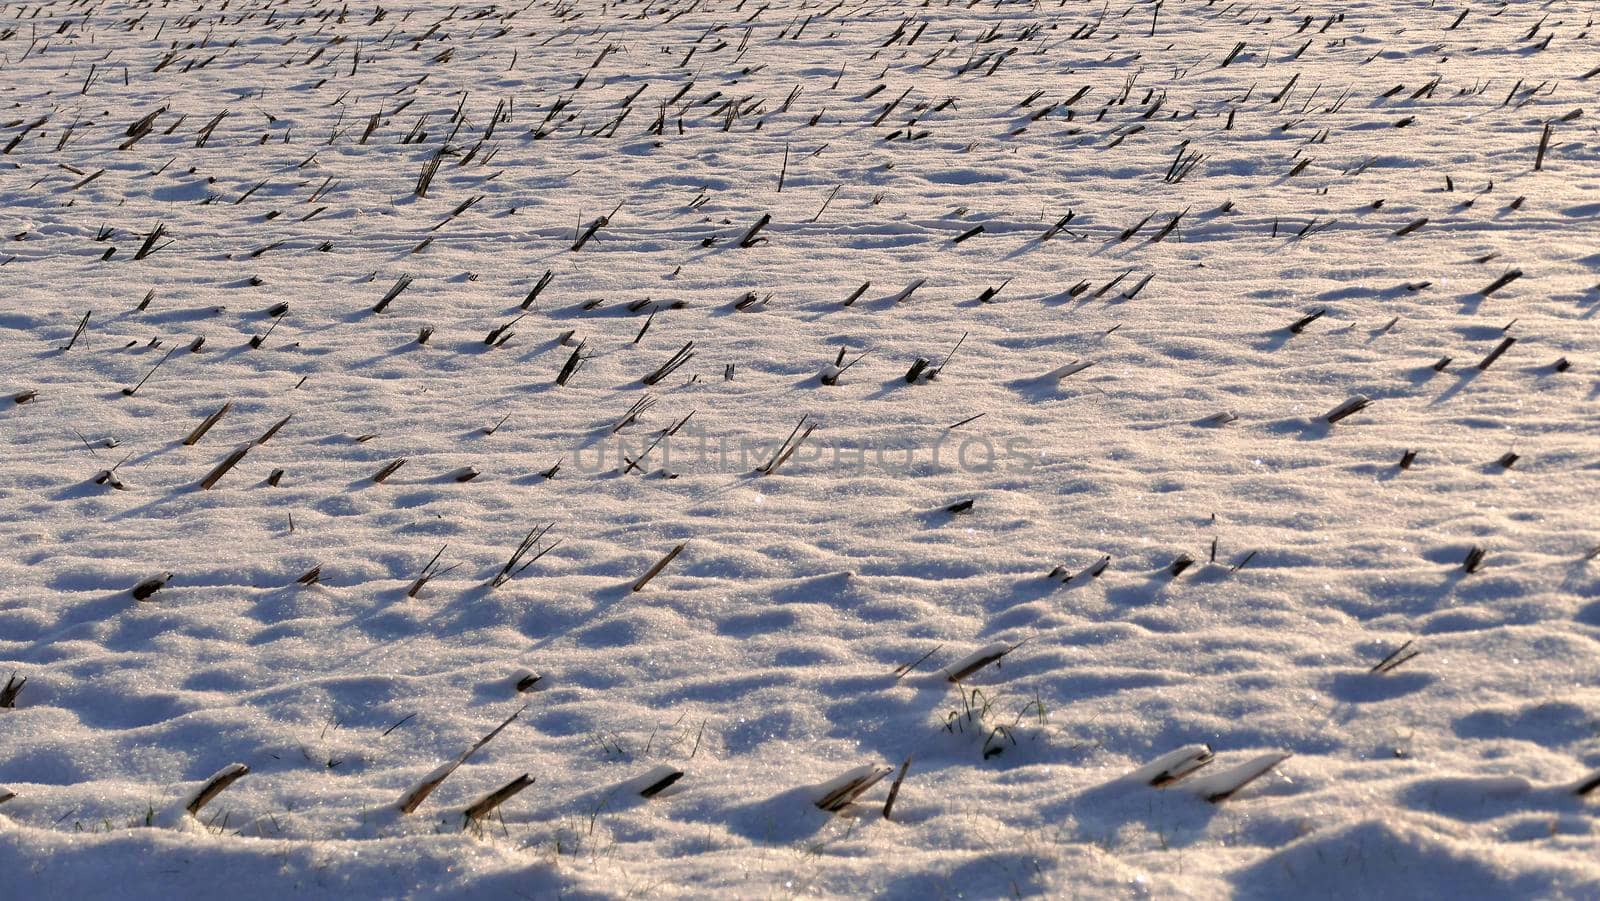 stubble field with snow in Germany by Jochen